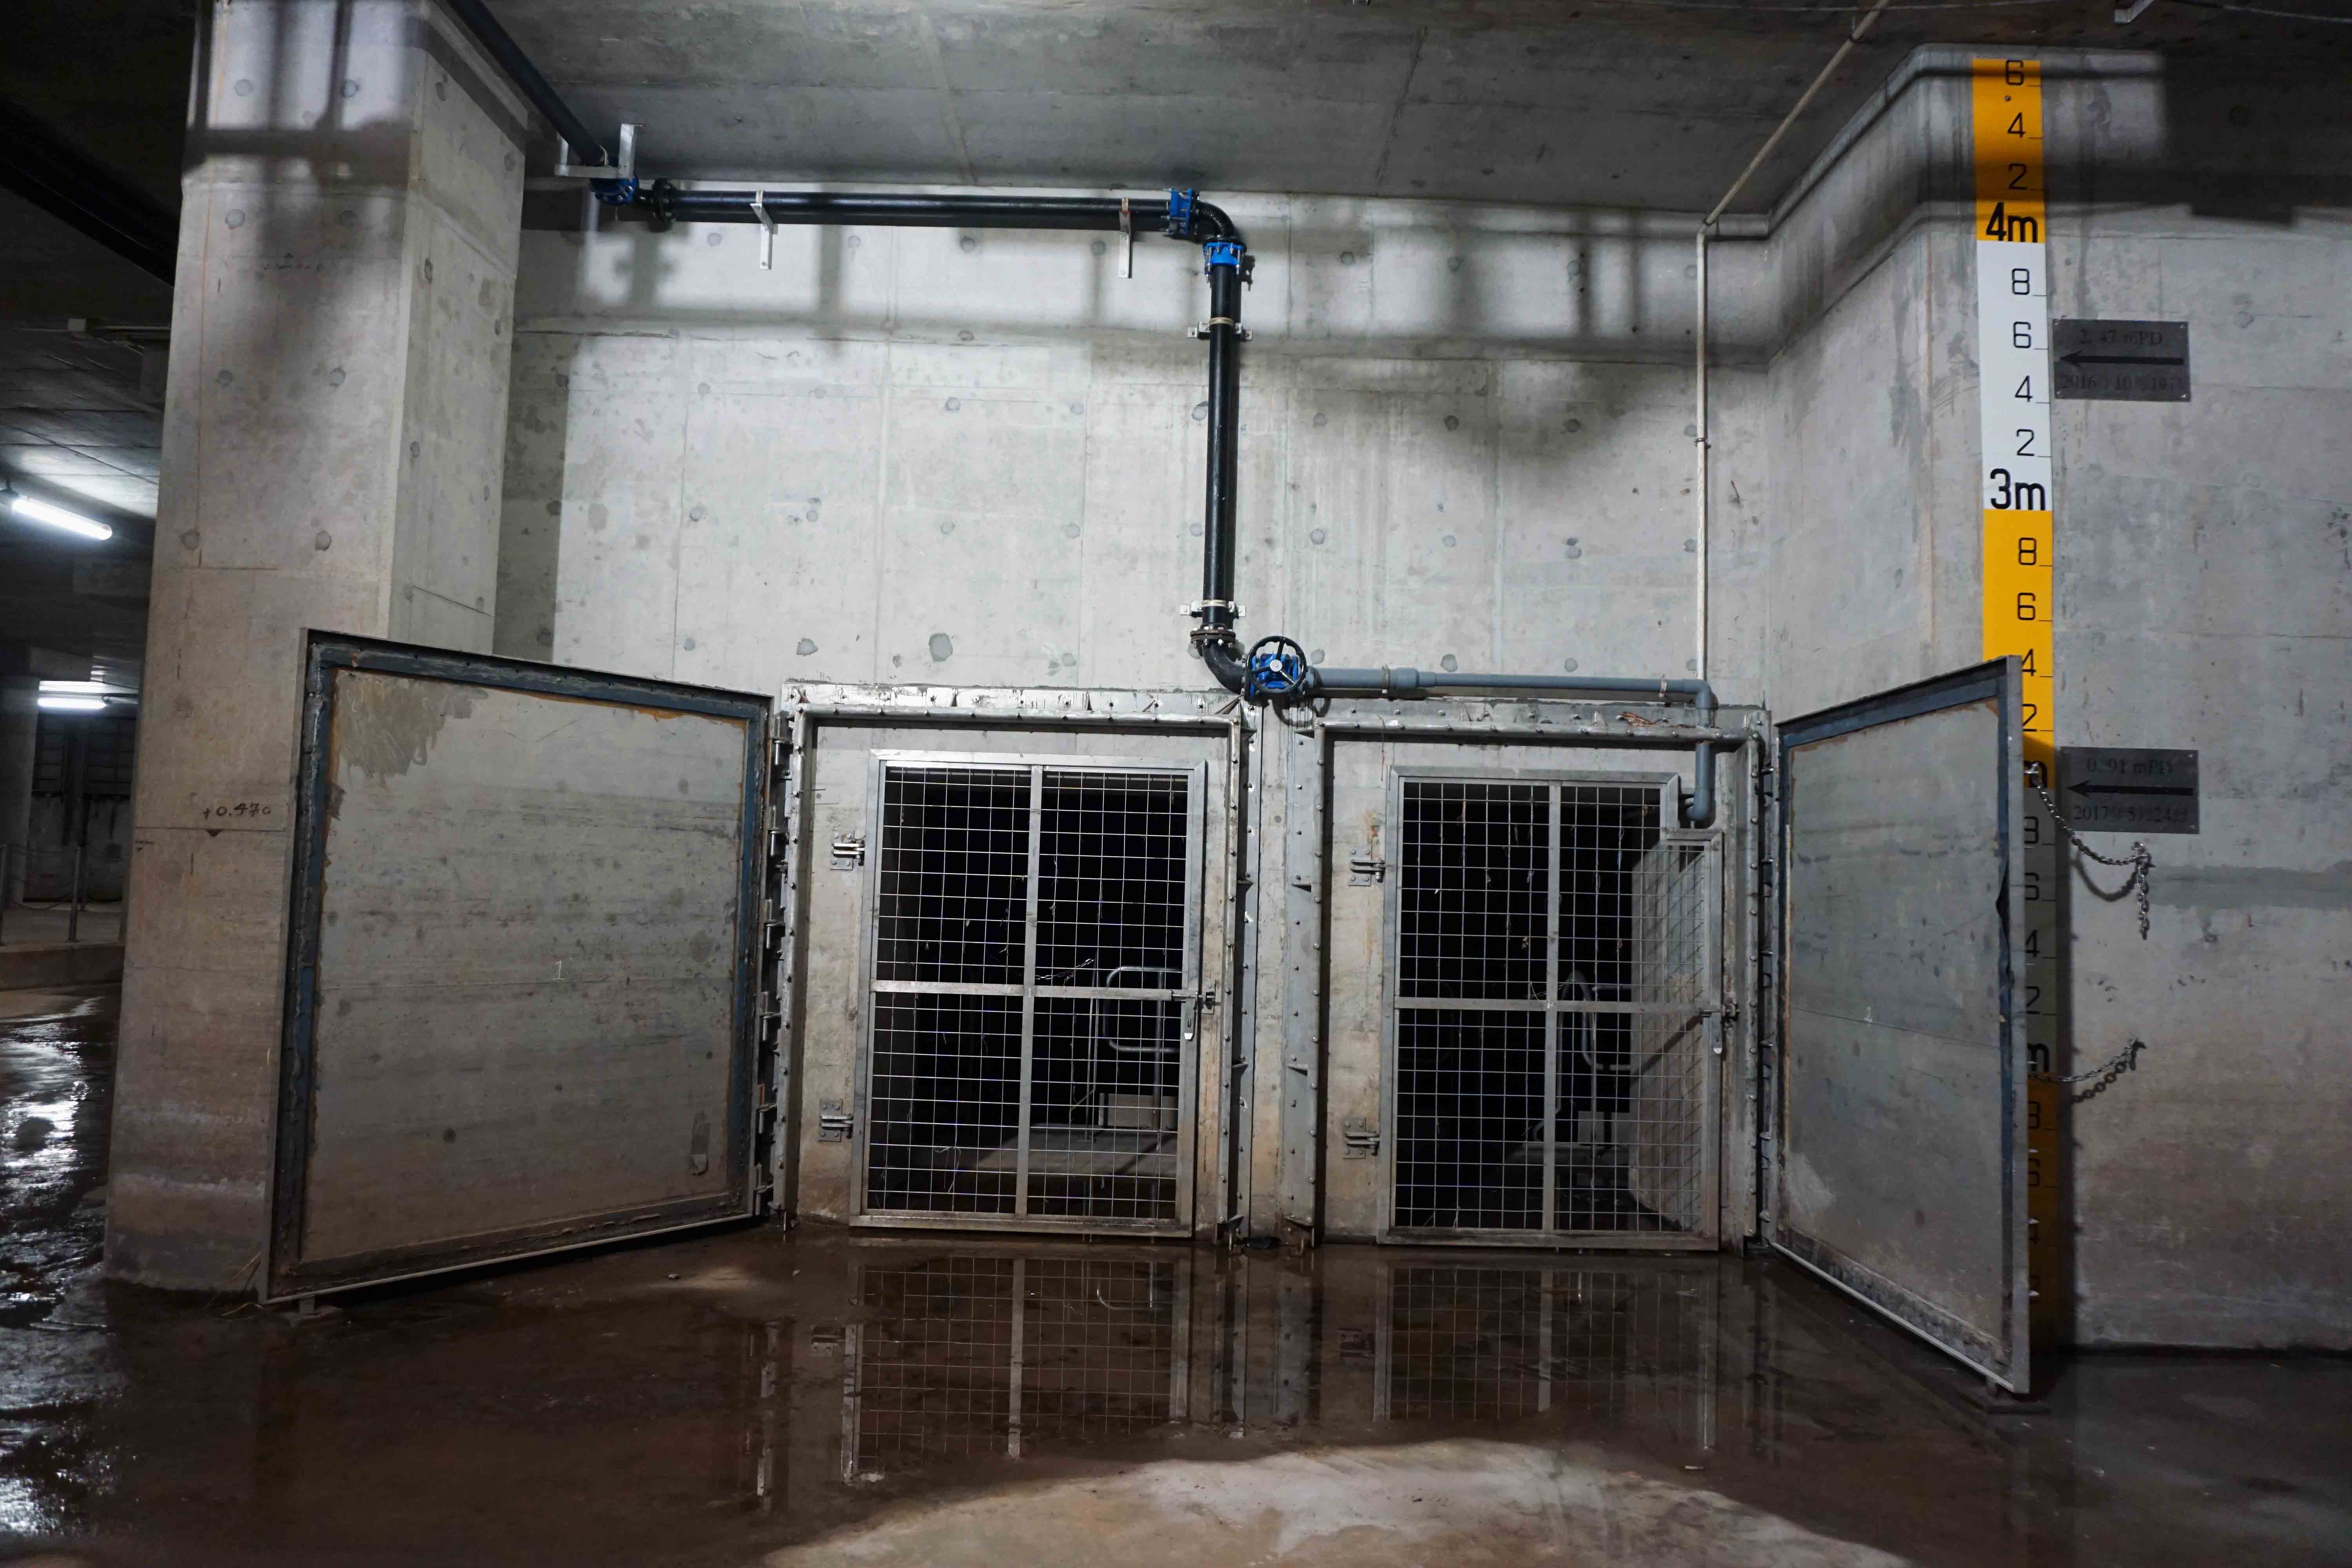 Visit to Happy Valley Underground Stormwater Storage Tank